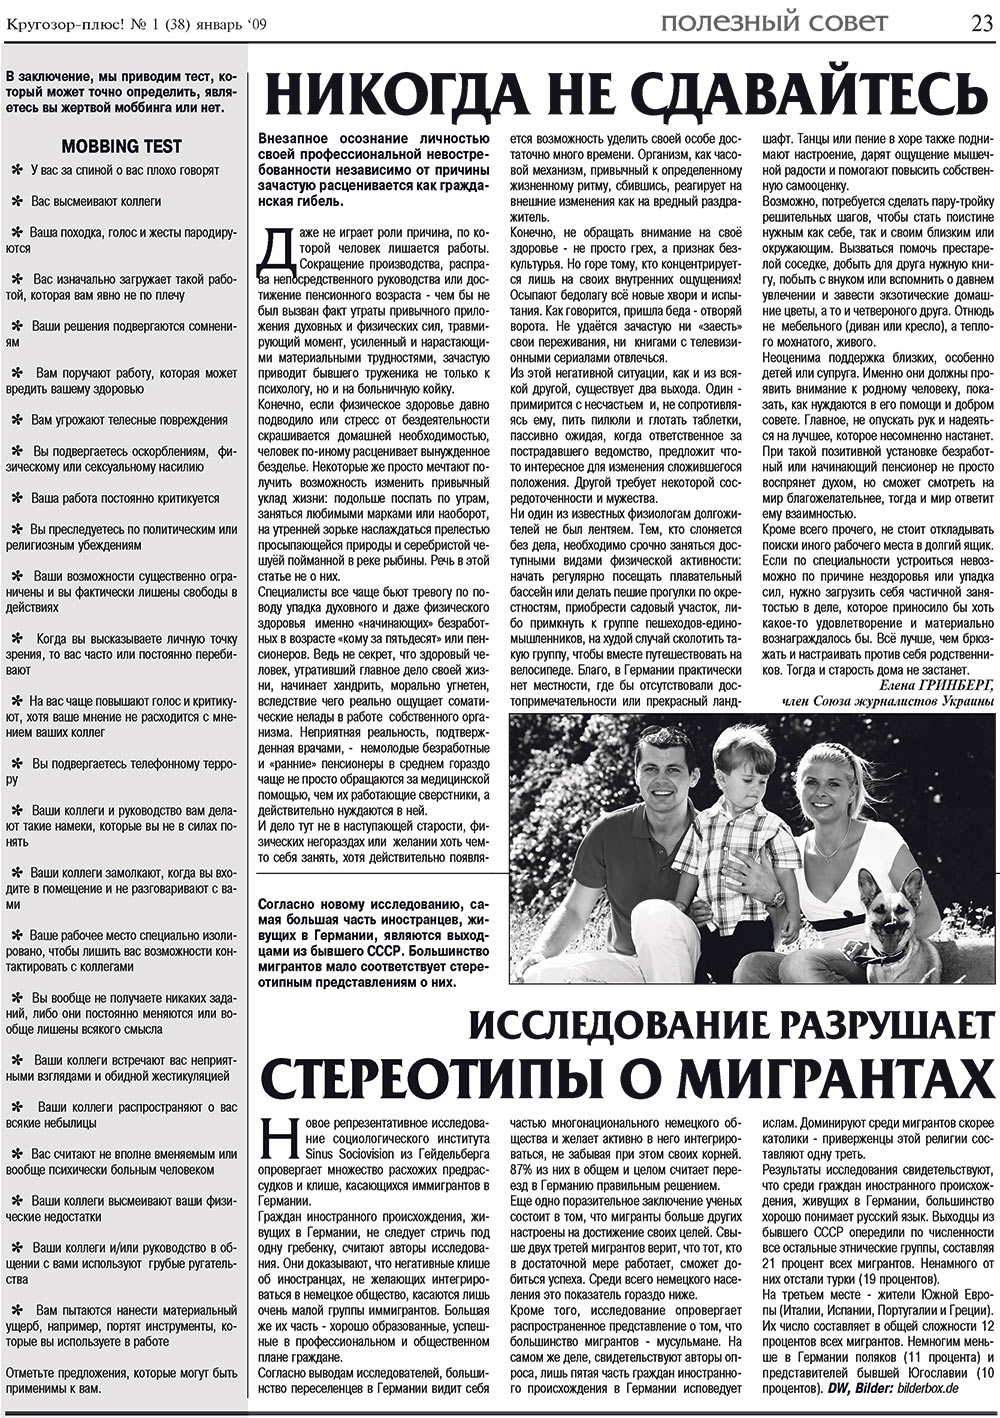 Кругозор плюс!, газета. 2009 №1 стр.23